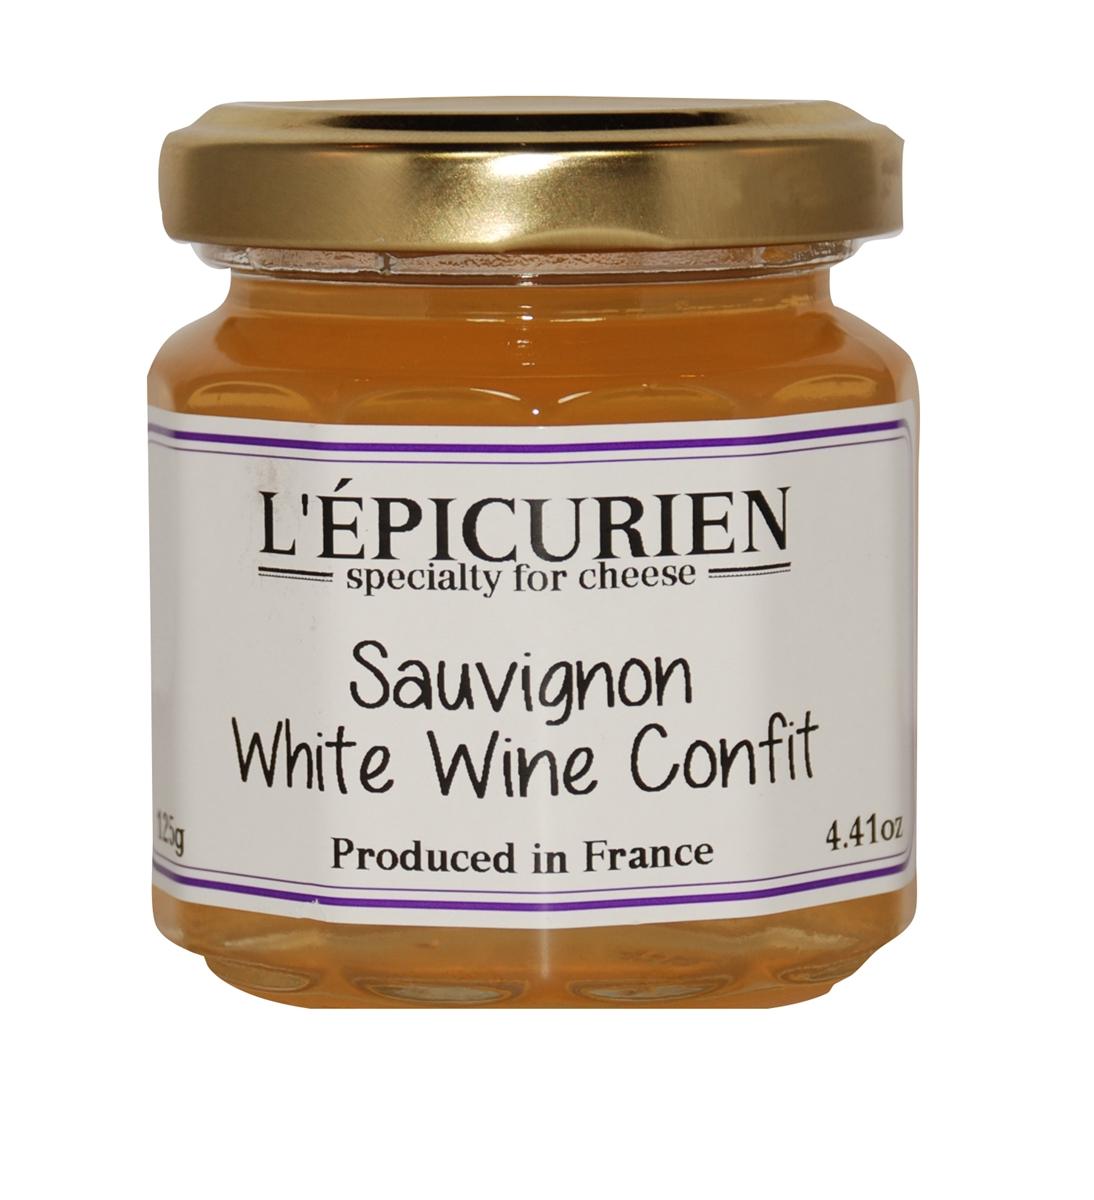 Sauvignon White Wine Confit